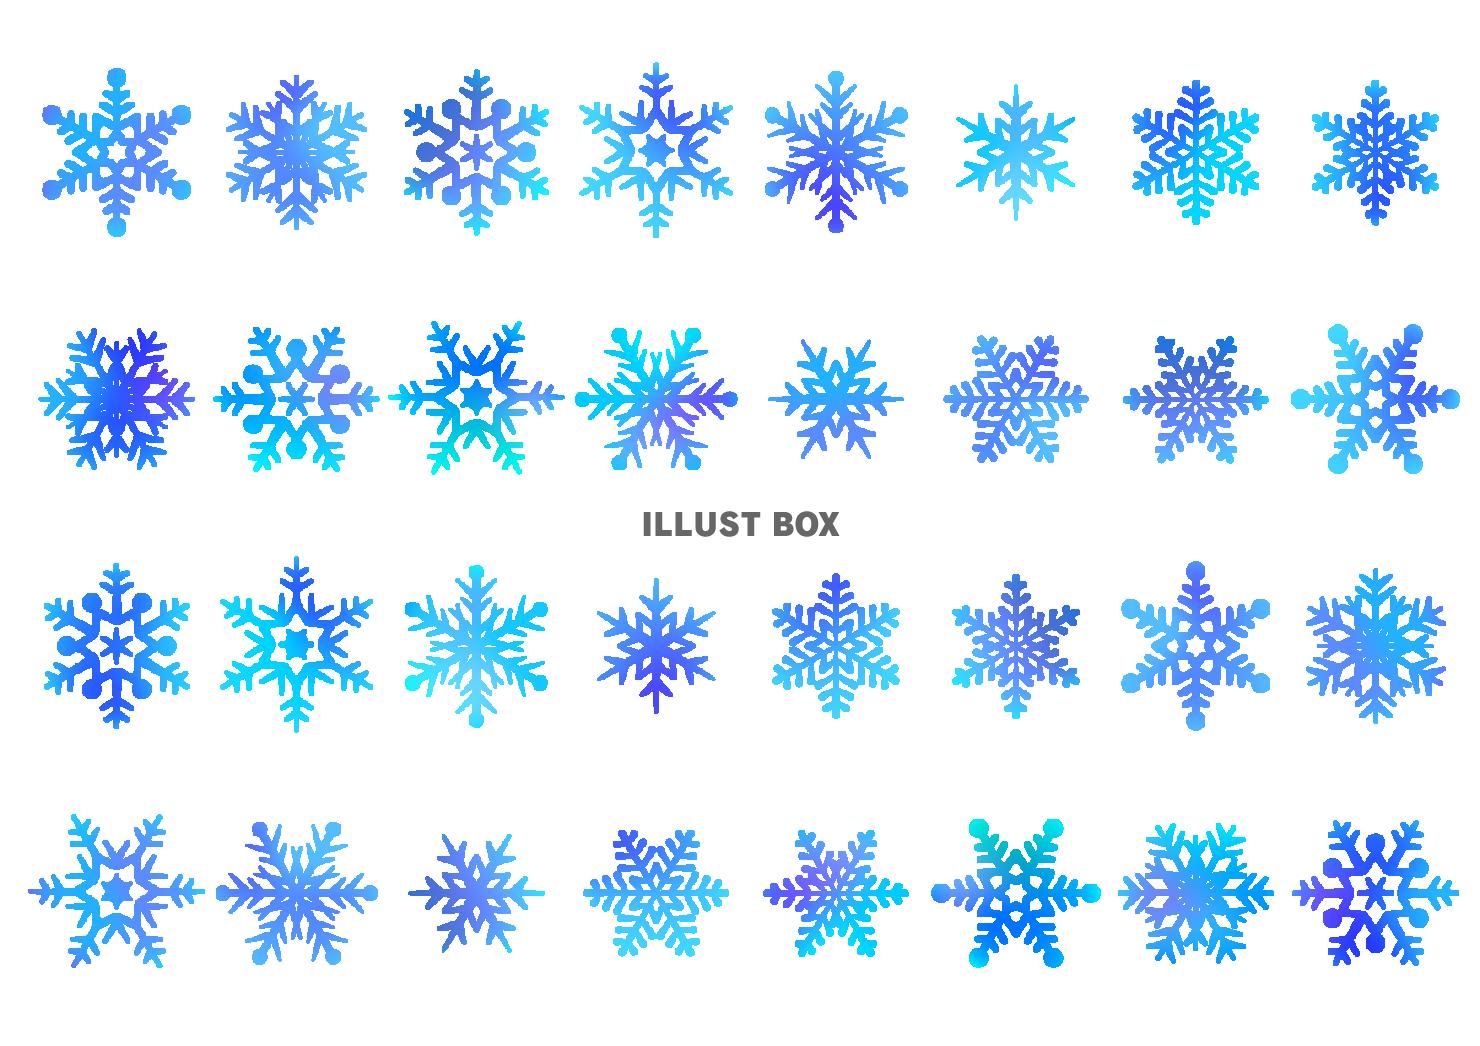 クリスマス 冬 アイコン フレーム 雪の結晶 イラスト無料